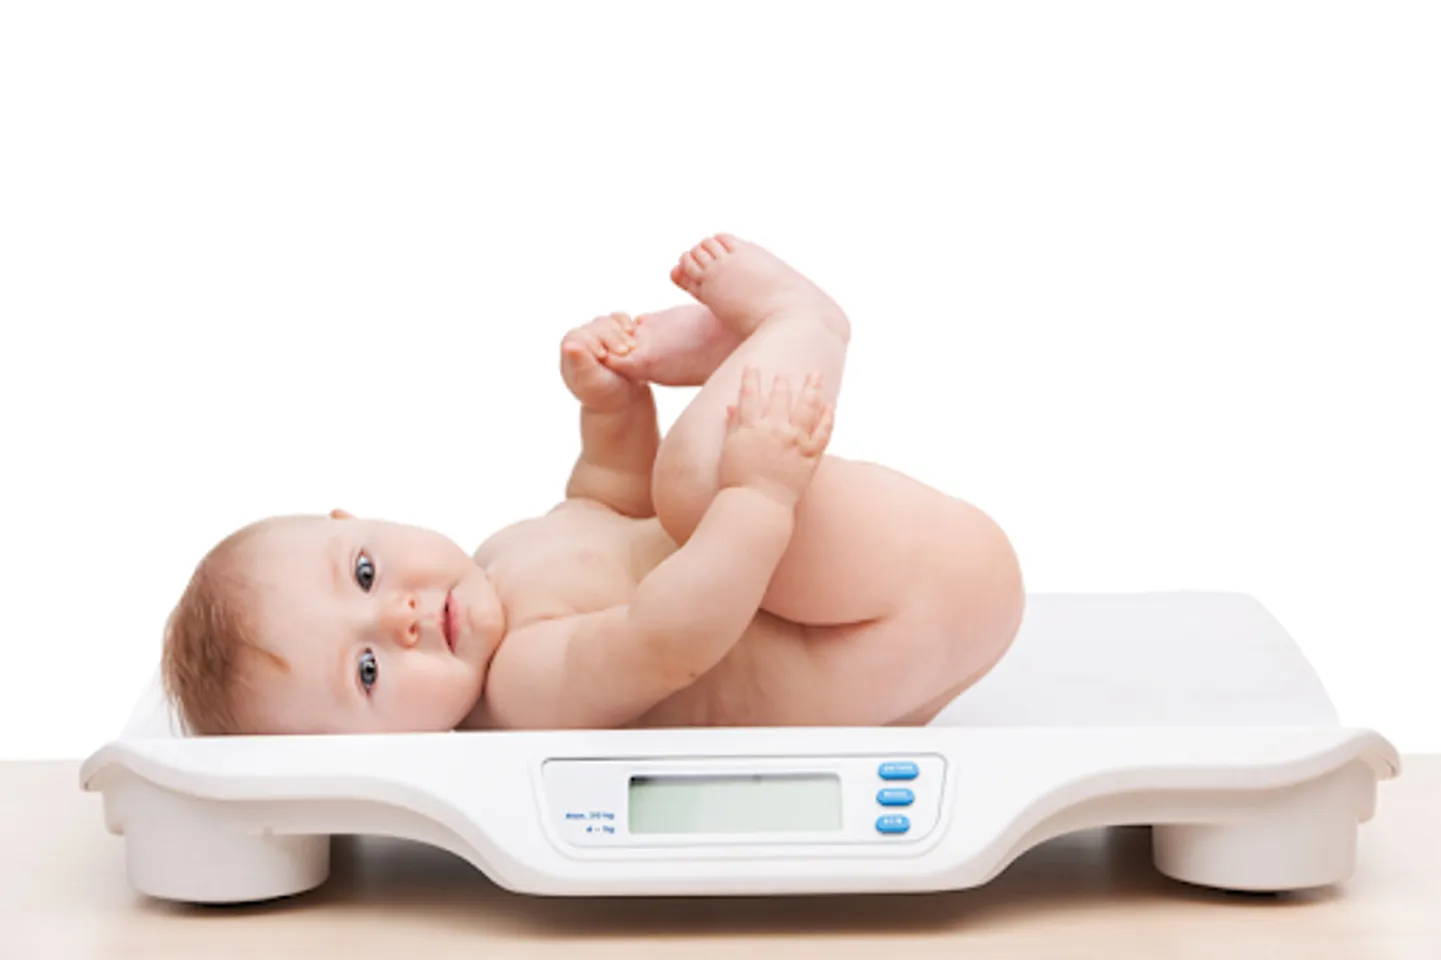 Hướng dẫn cơ hội đo trọng lượng chuẩn chỉnh mang đến con trẻ kể từ sơ sinh – 18 tuổi